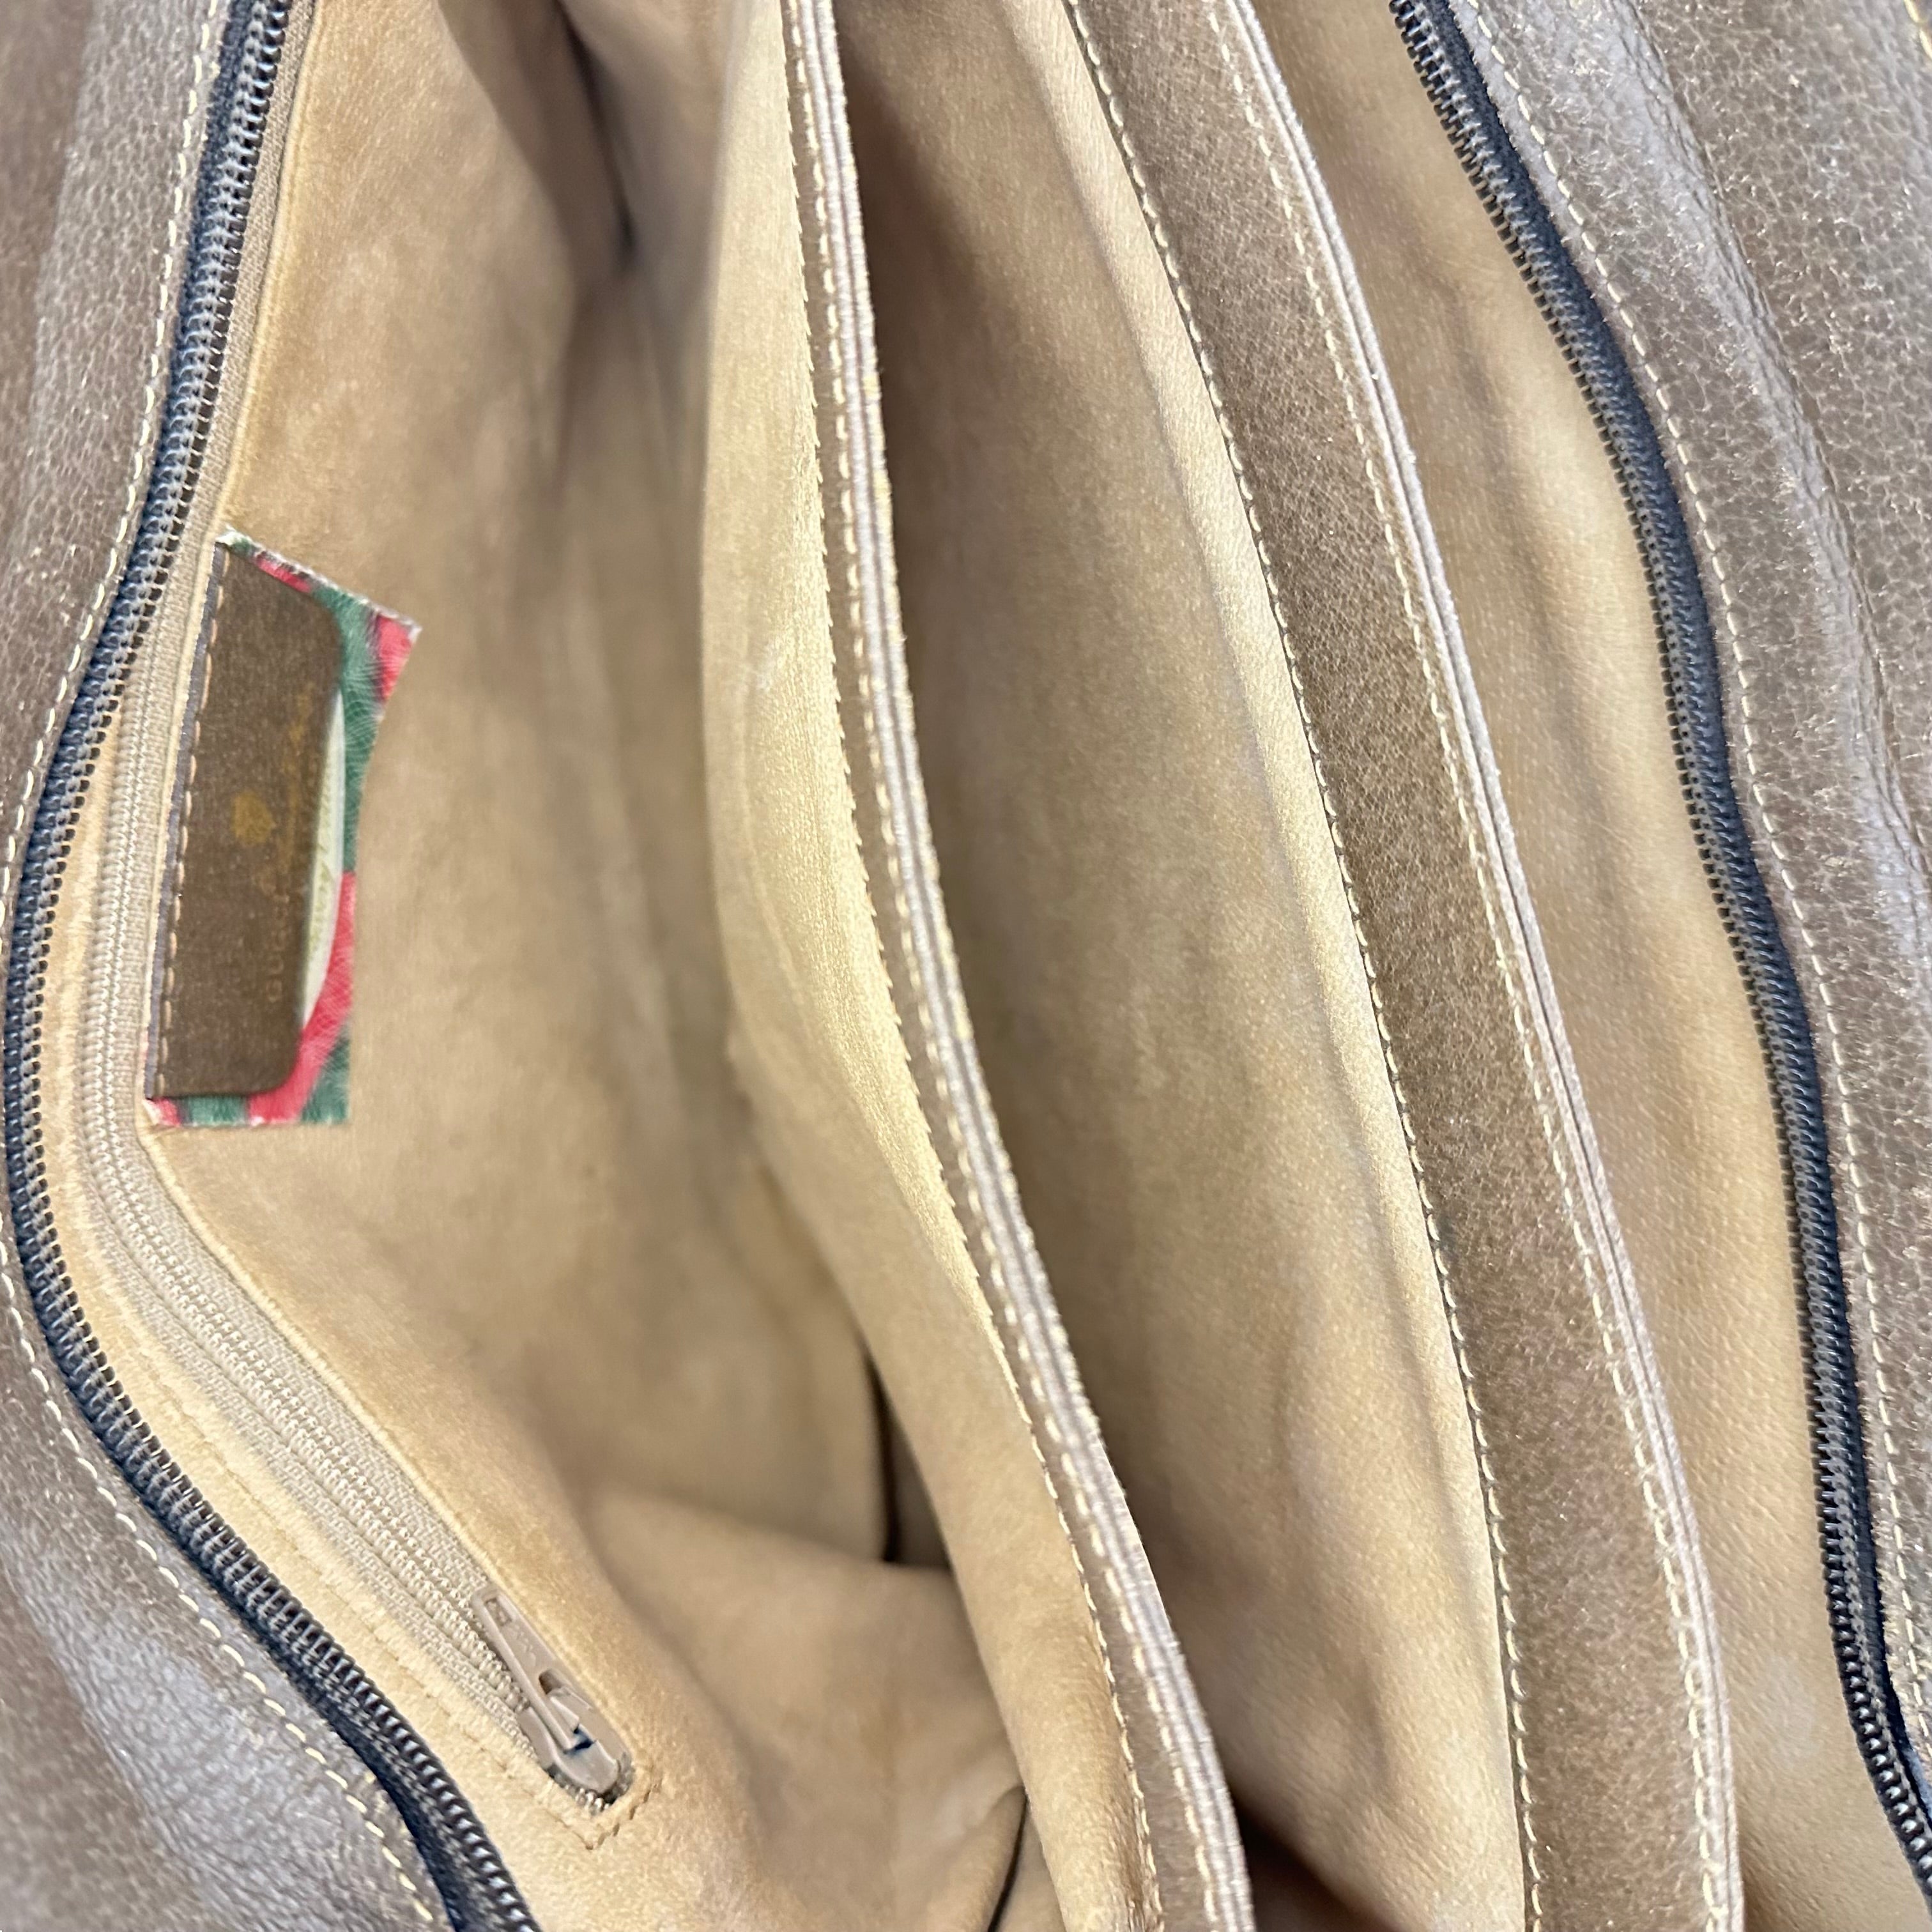 Vintage Ophidia Shoulder Bag